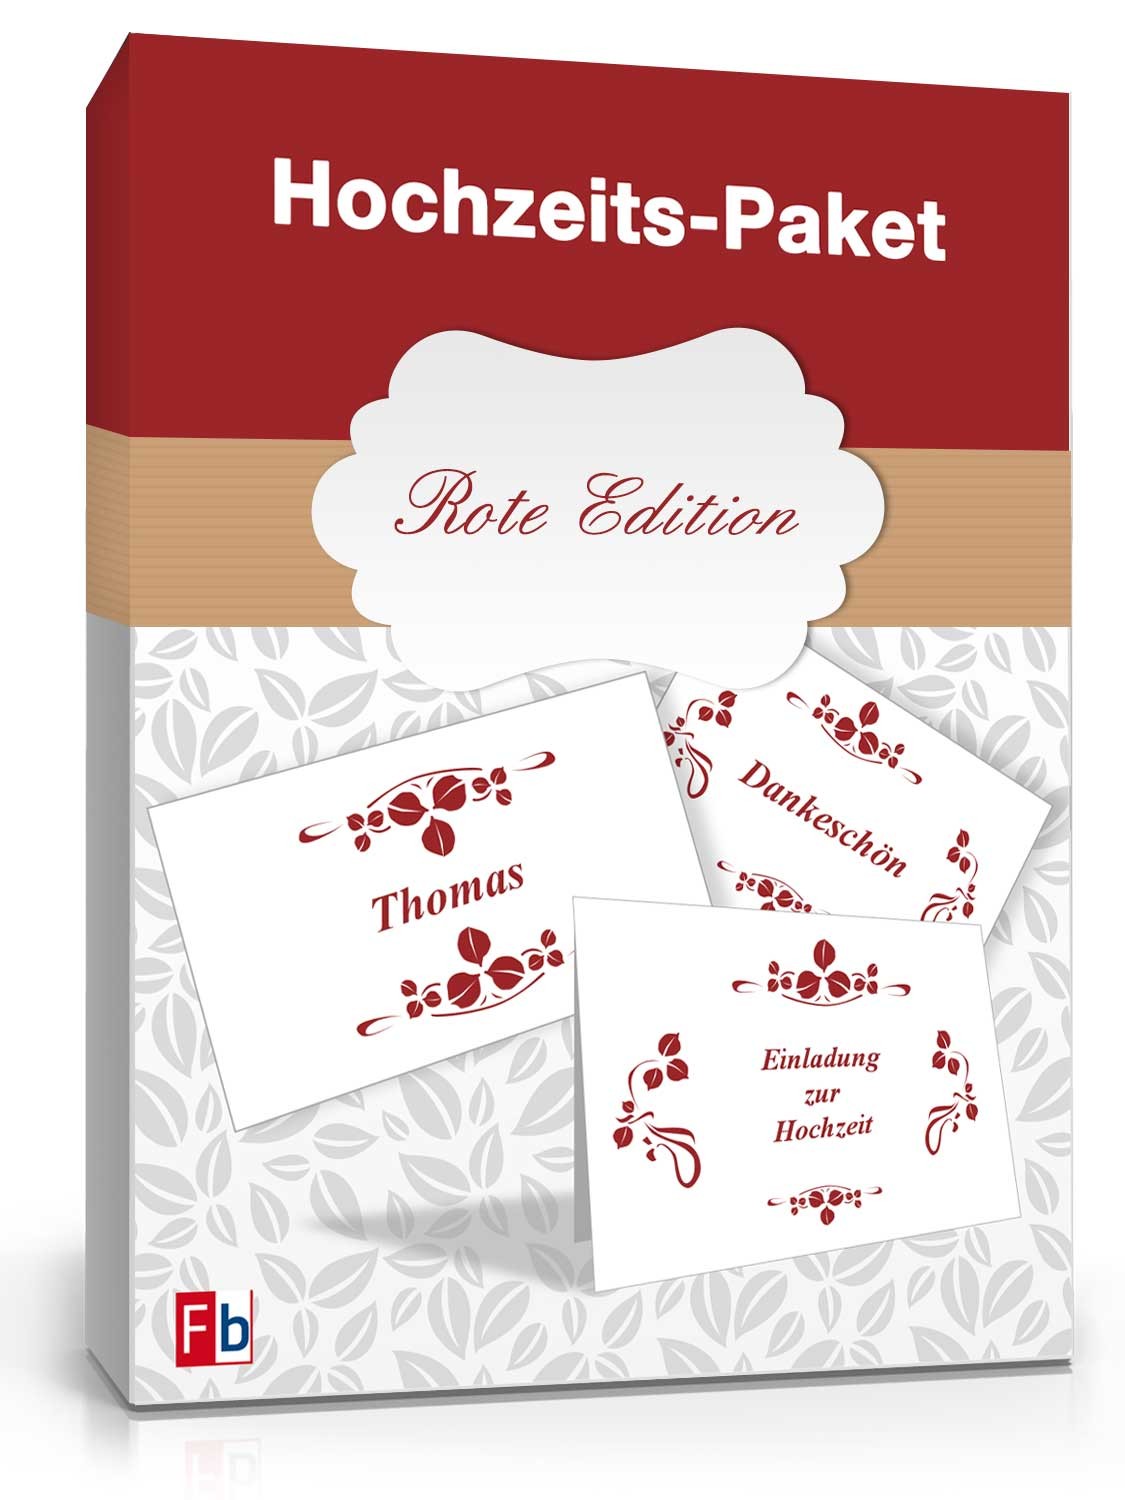 Hauptbild des Produkts: Hochzeits-Paket (Rote Edition)